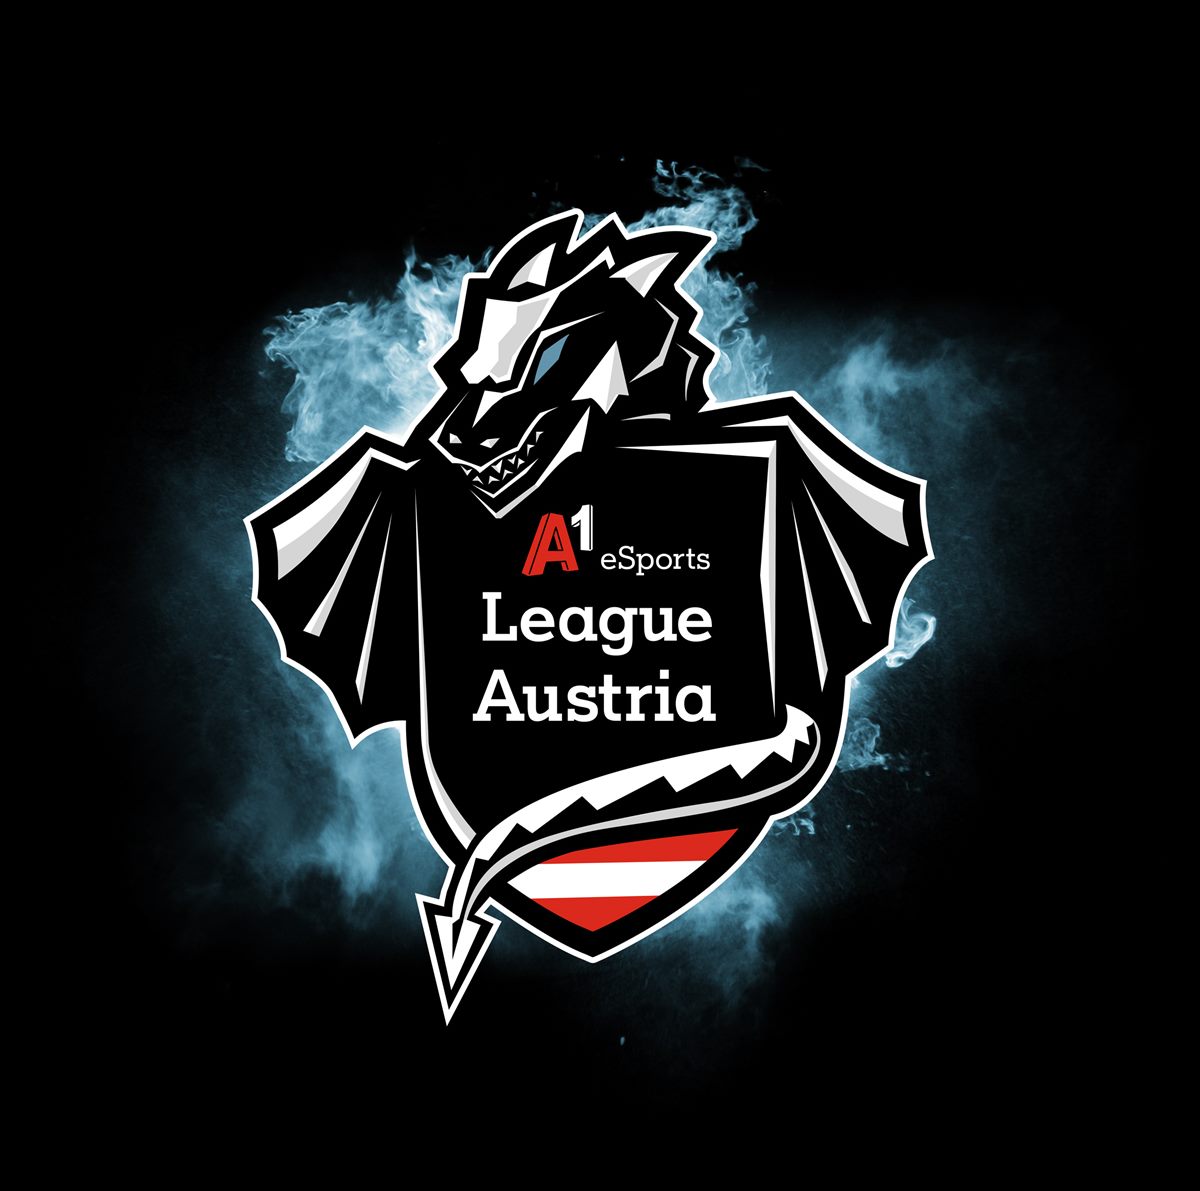 A1 eSports League Austria